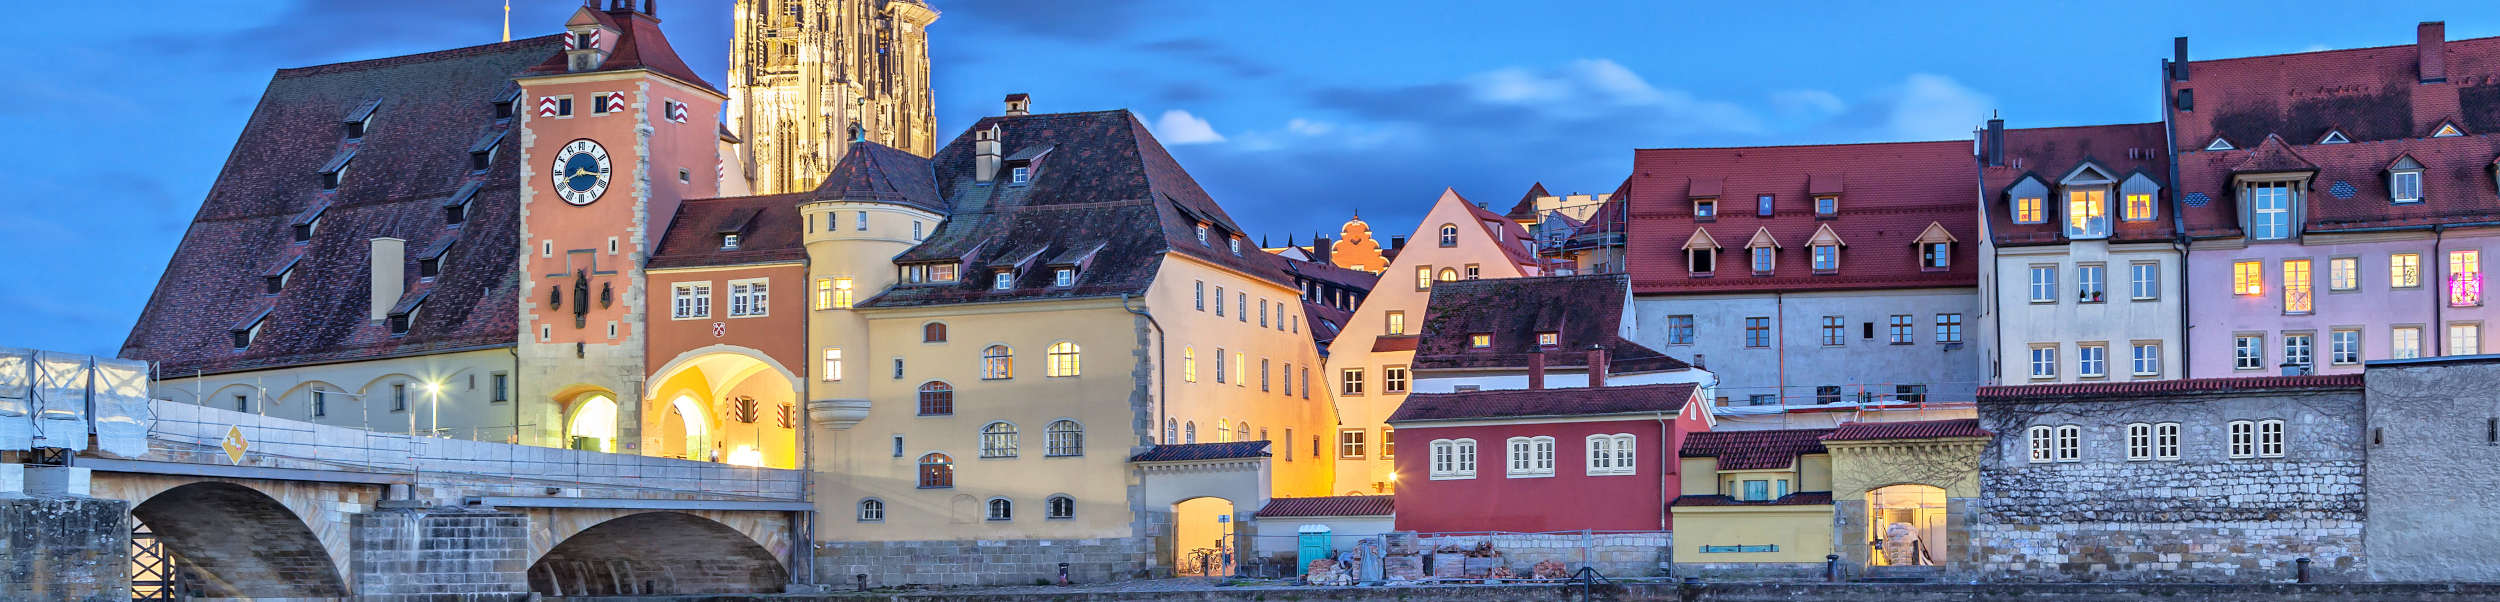 Das Bild zeigt die Stadt Regensburg